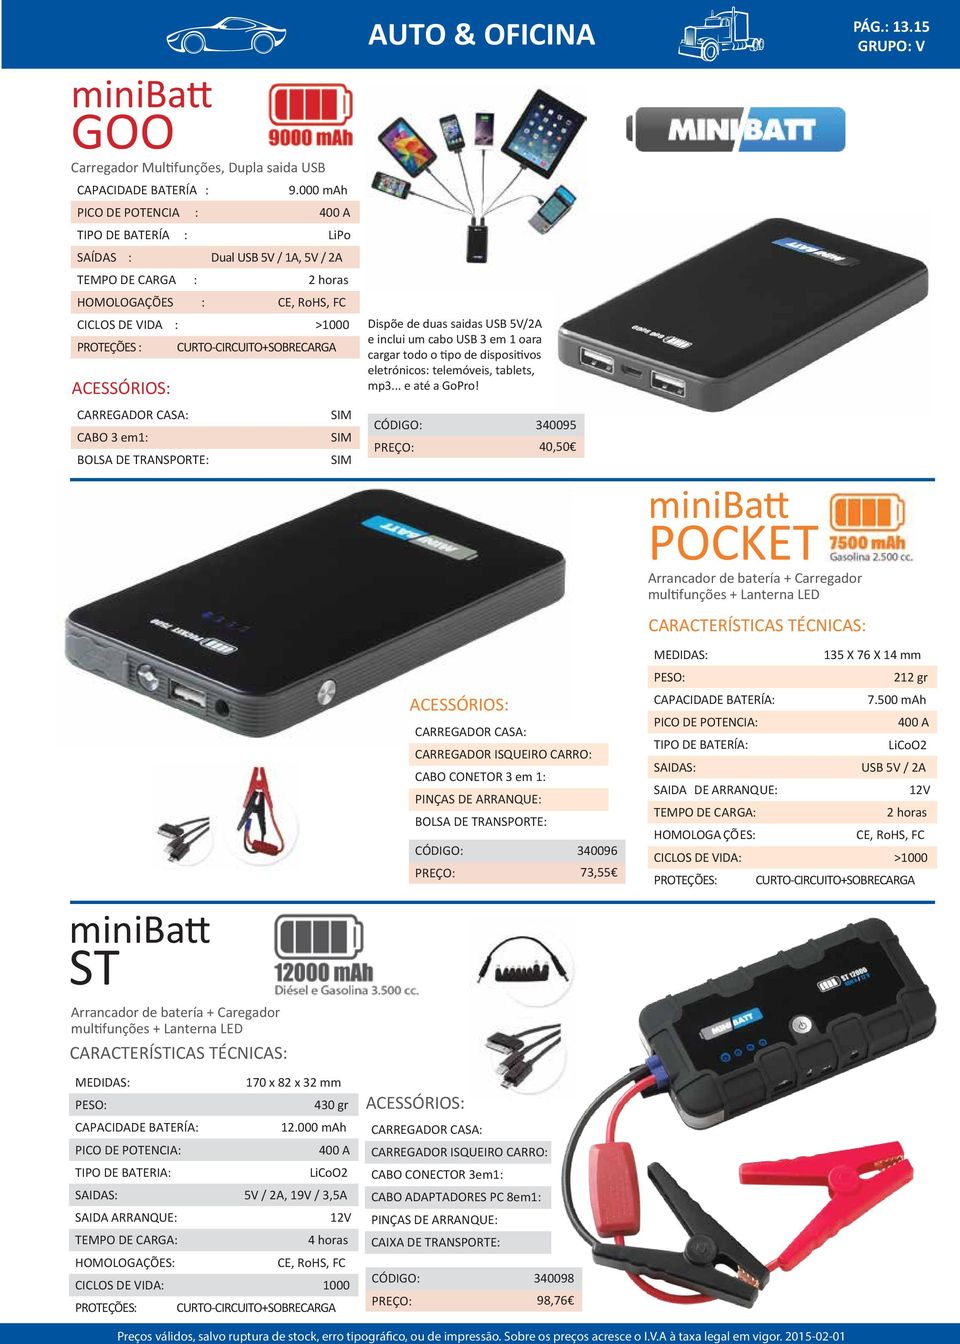 CURTO-CIRCUITO+SOBRECARGA ACESSÓRIOS: Dispõe de duas saidas USB 5V/2A e inclui um cabo USB 3 em 1 oara cargar todo o tipo de dispositivos eletrónicos: telemóveis, tablets, mp3... e até a GoPro!